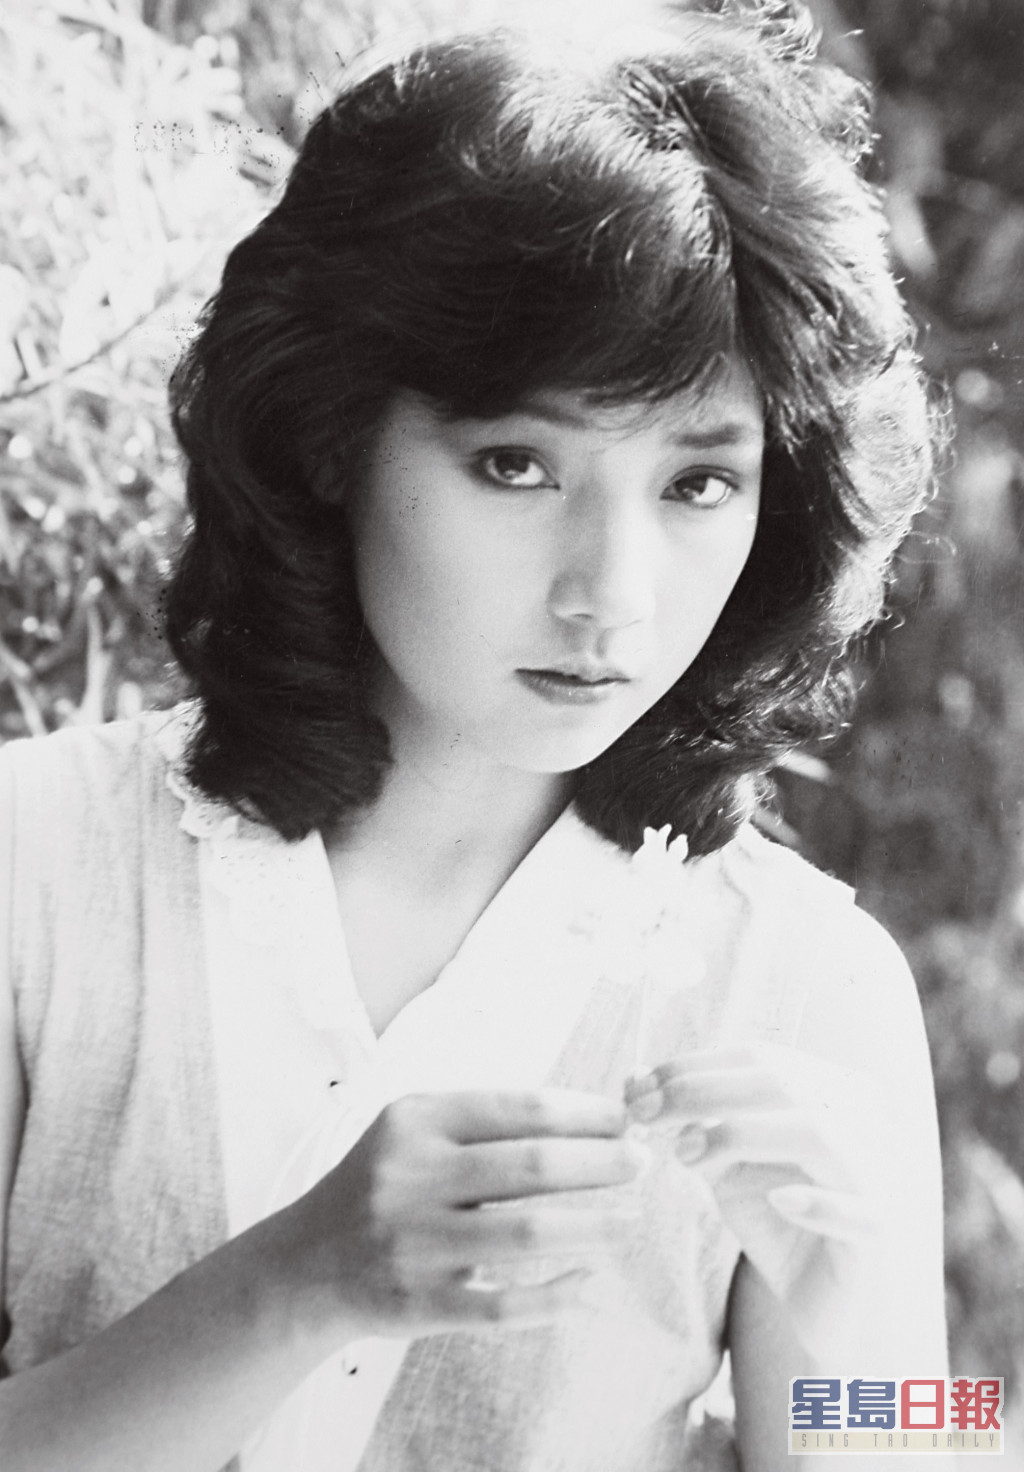 戚美珍1980年參加無綫電視藝員訓練班第10期藝員訓練班。